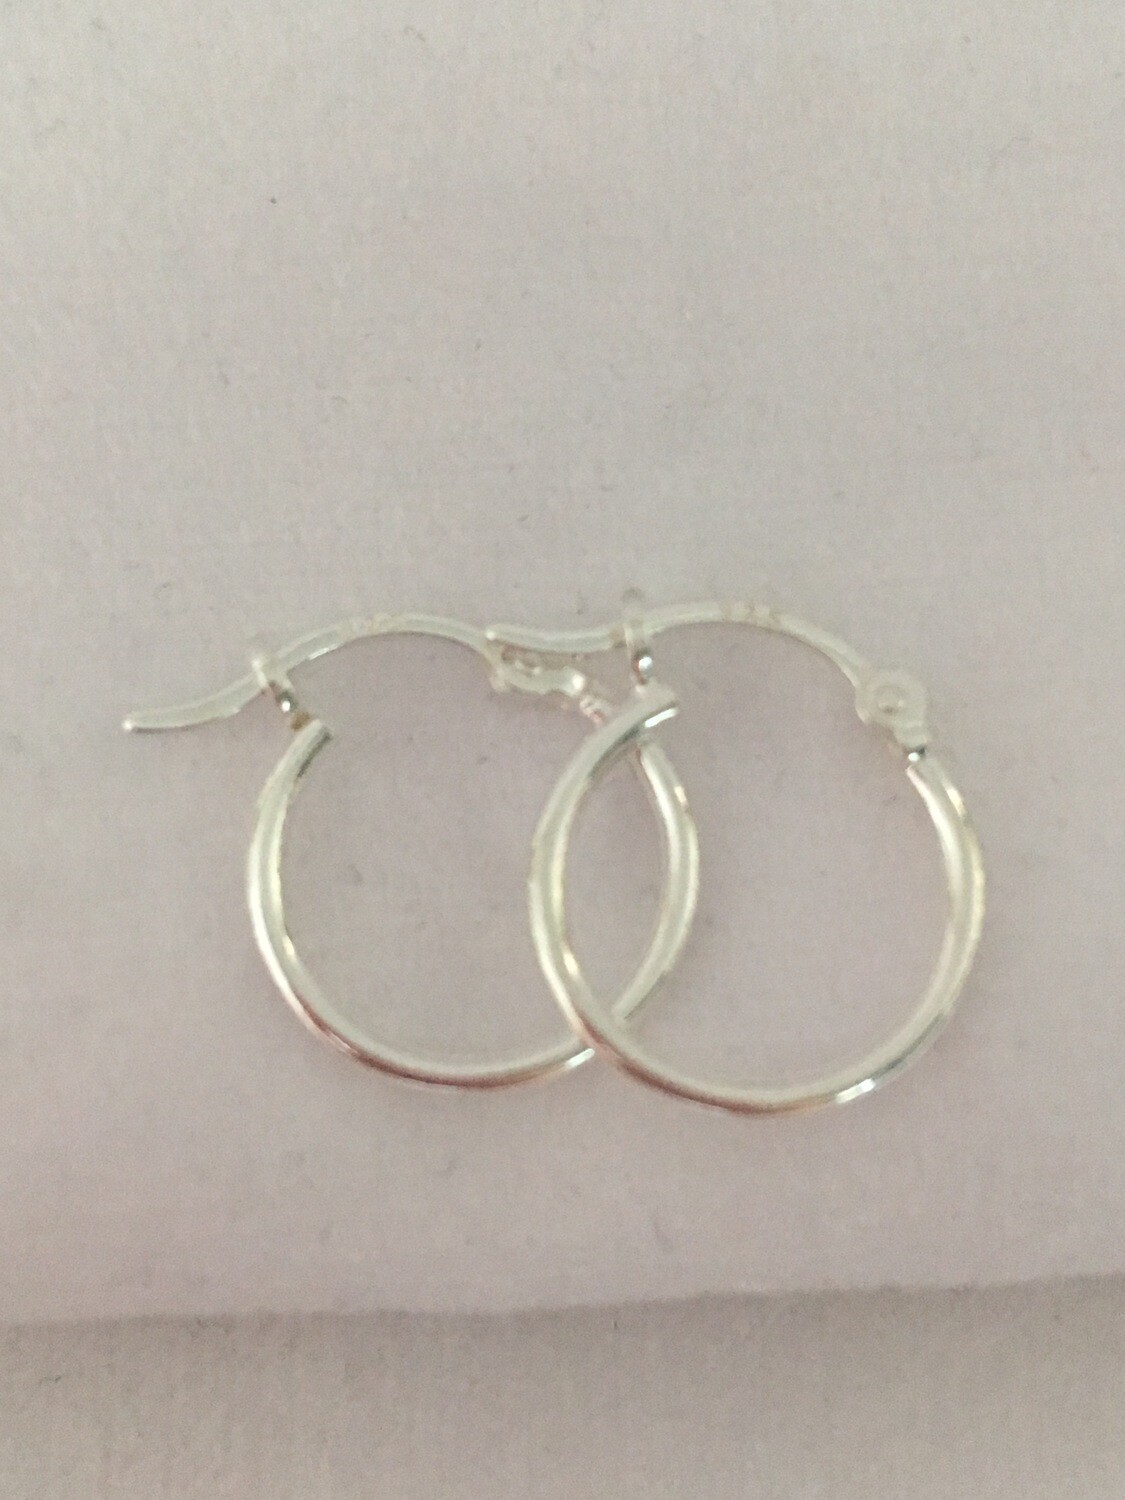 1.5x15 mm Hinged Ear Hoop Sterling Silver Earrings